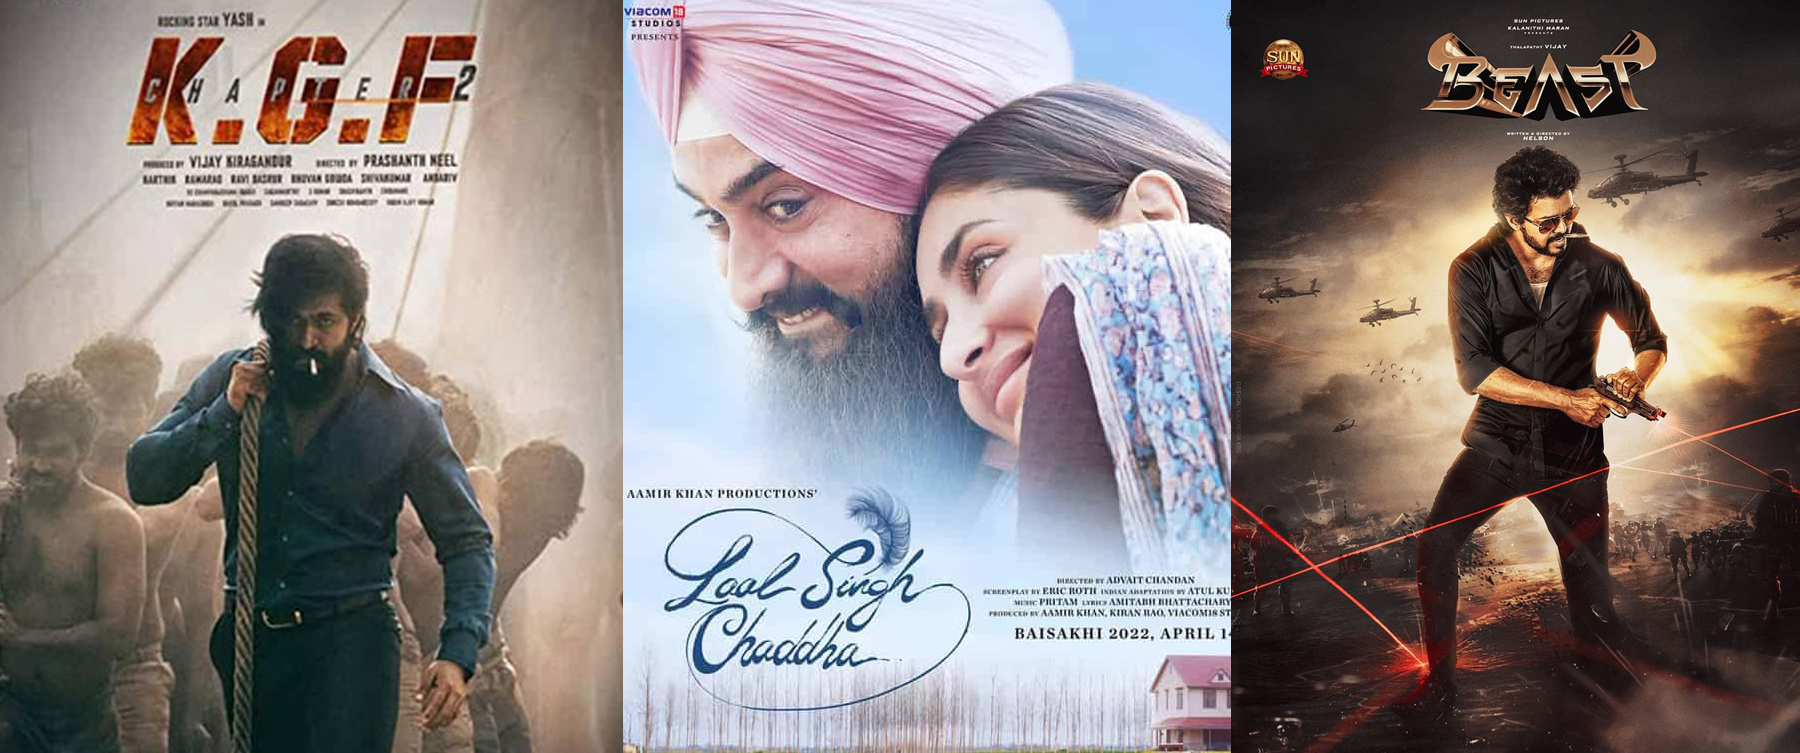 Beast, Lal Singh Chadda, and KGF2 war at the box office